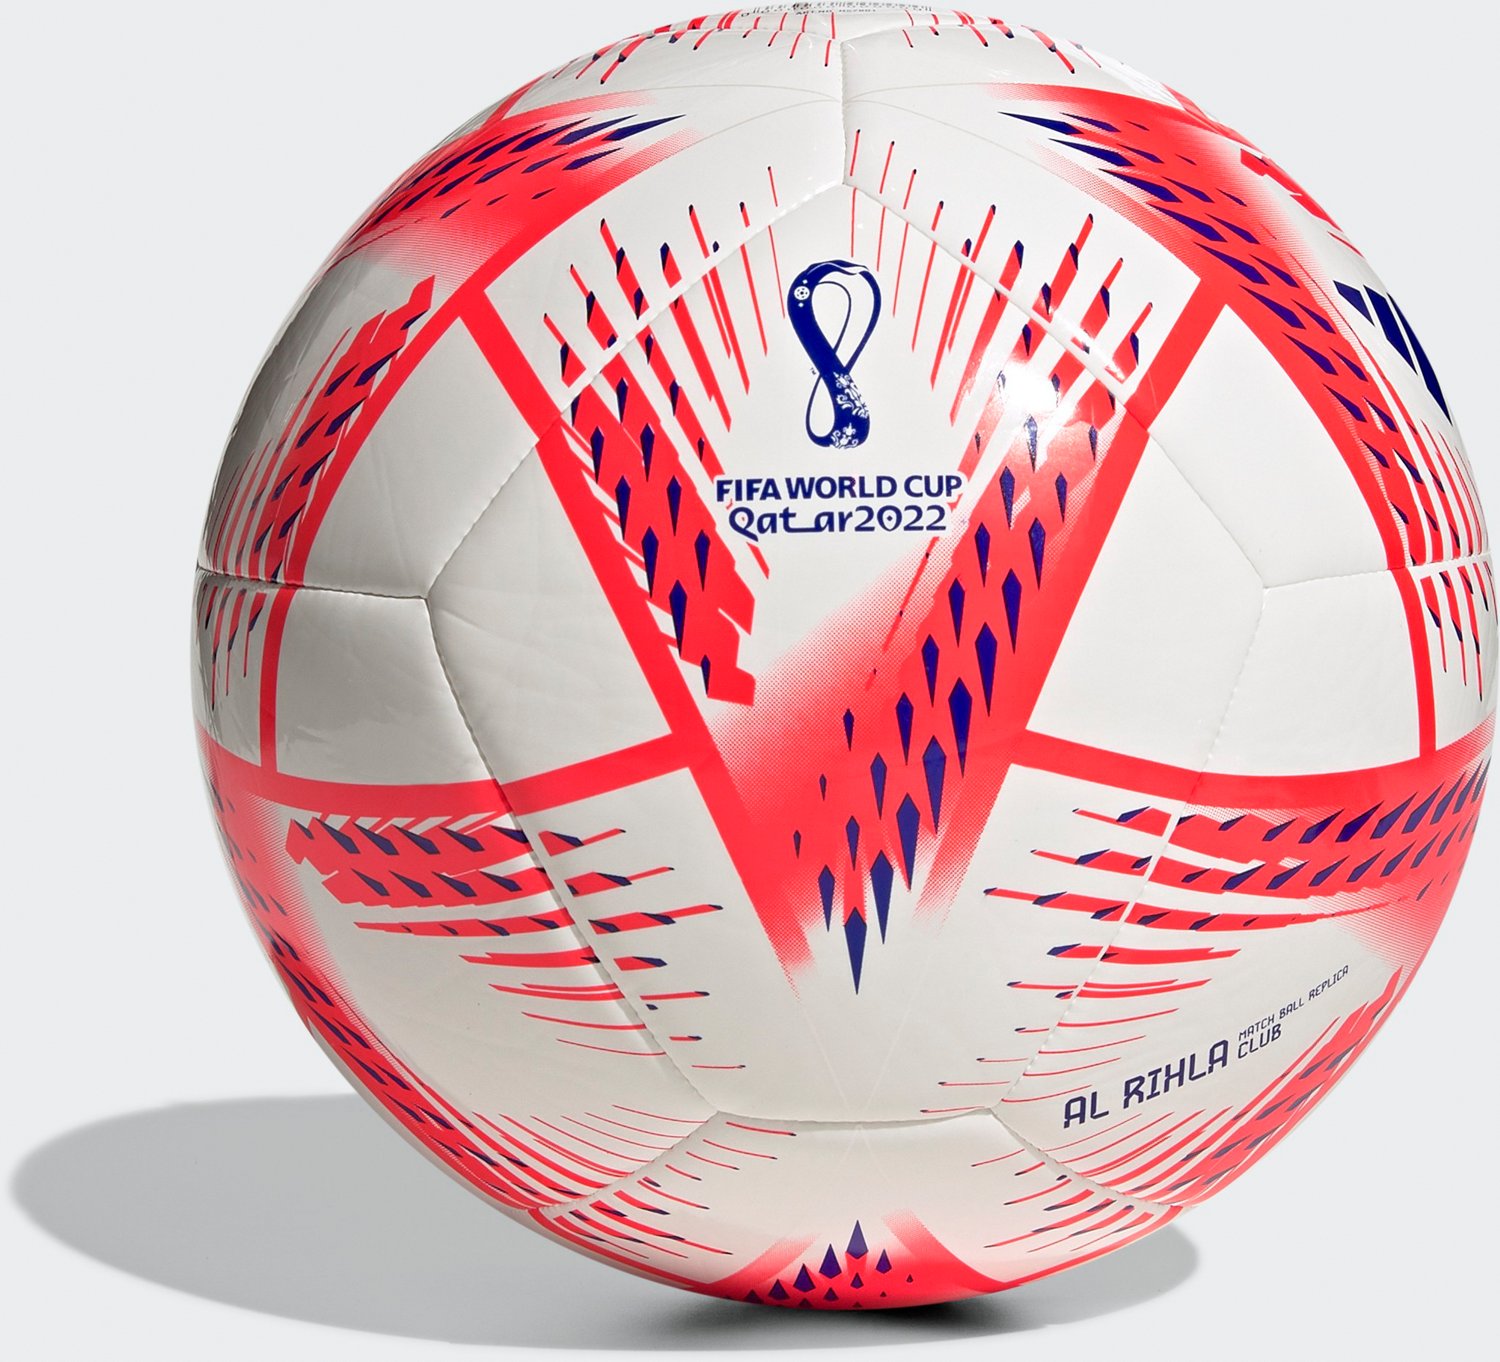 Aangenaam kennis te maken mengen aspect adidas 2022 World Cup Club Soccer Ball | Academy